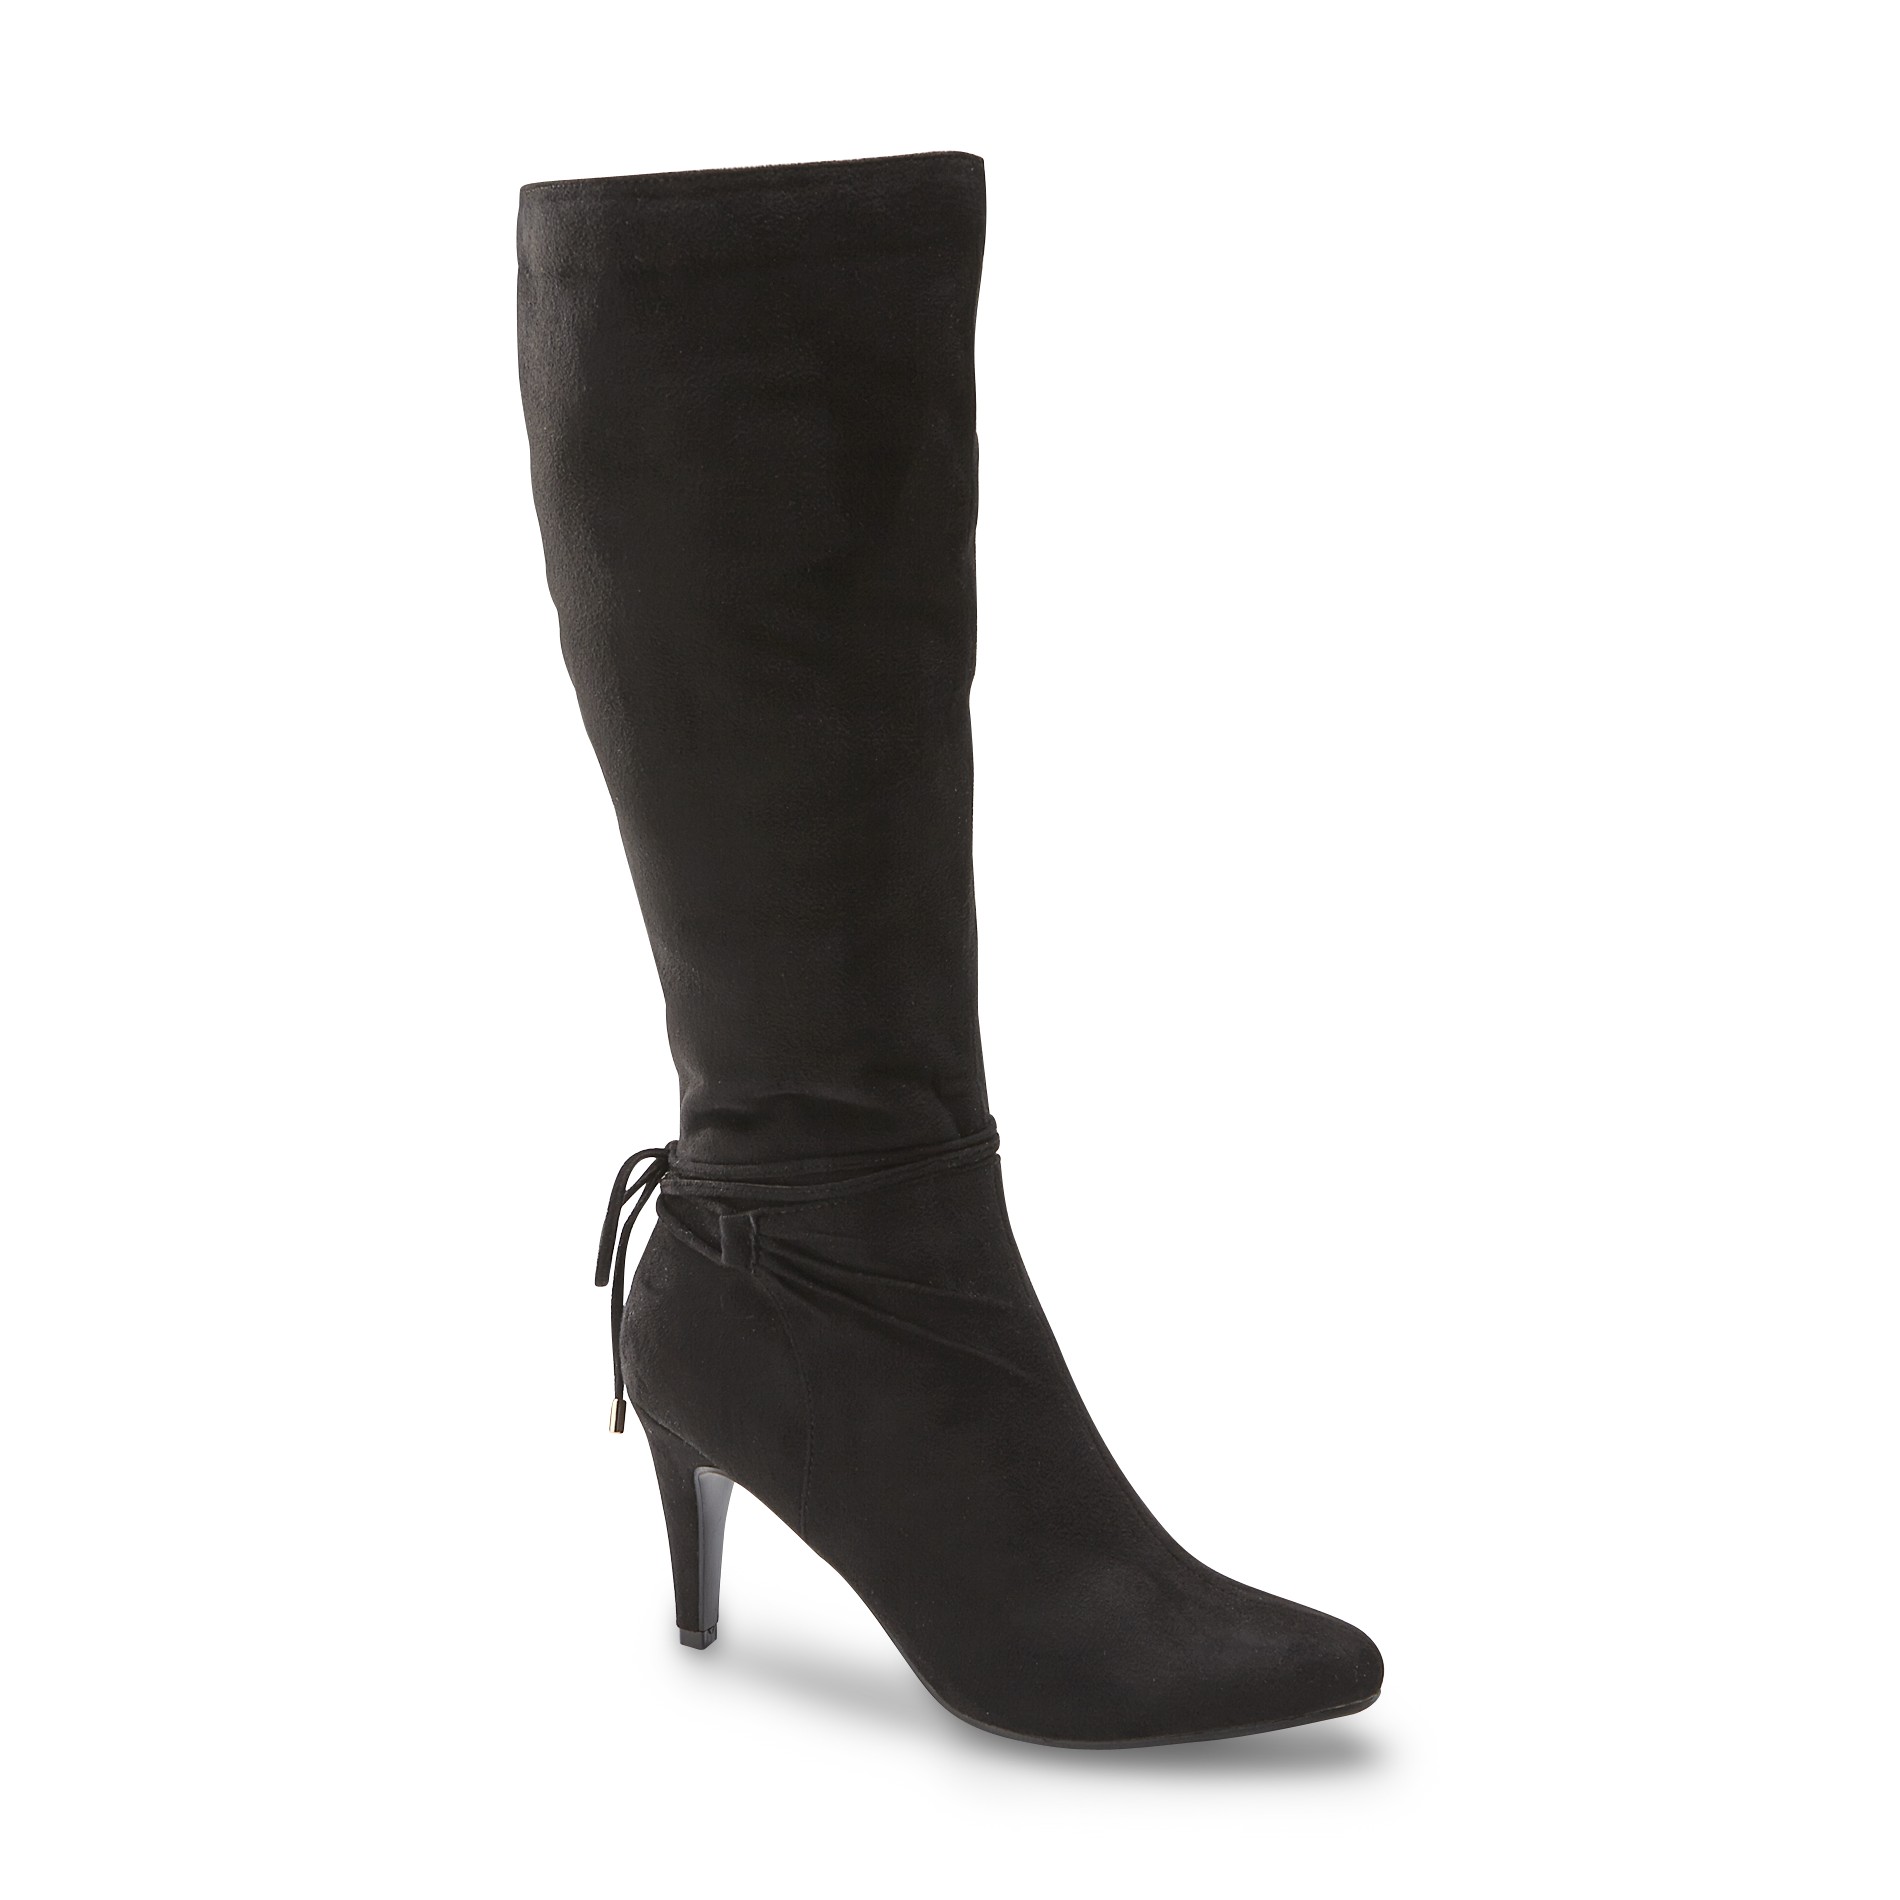 Covington Women's Gabrielle Knee-High Fashion Boot - Black